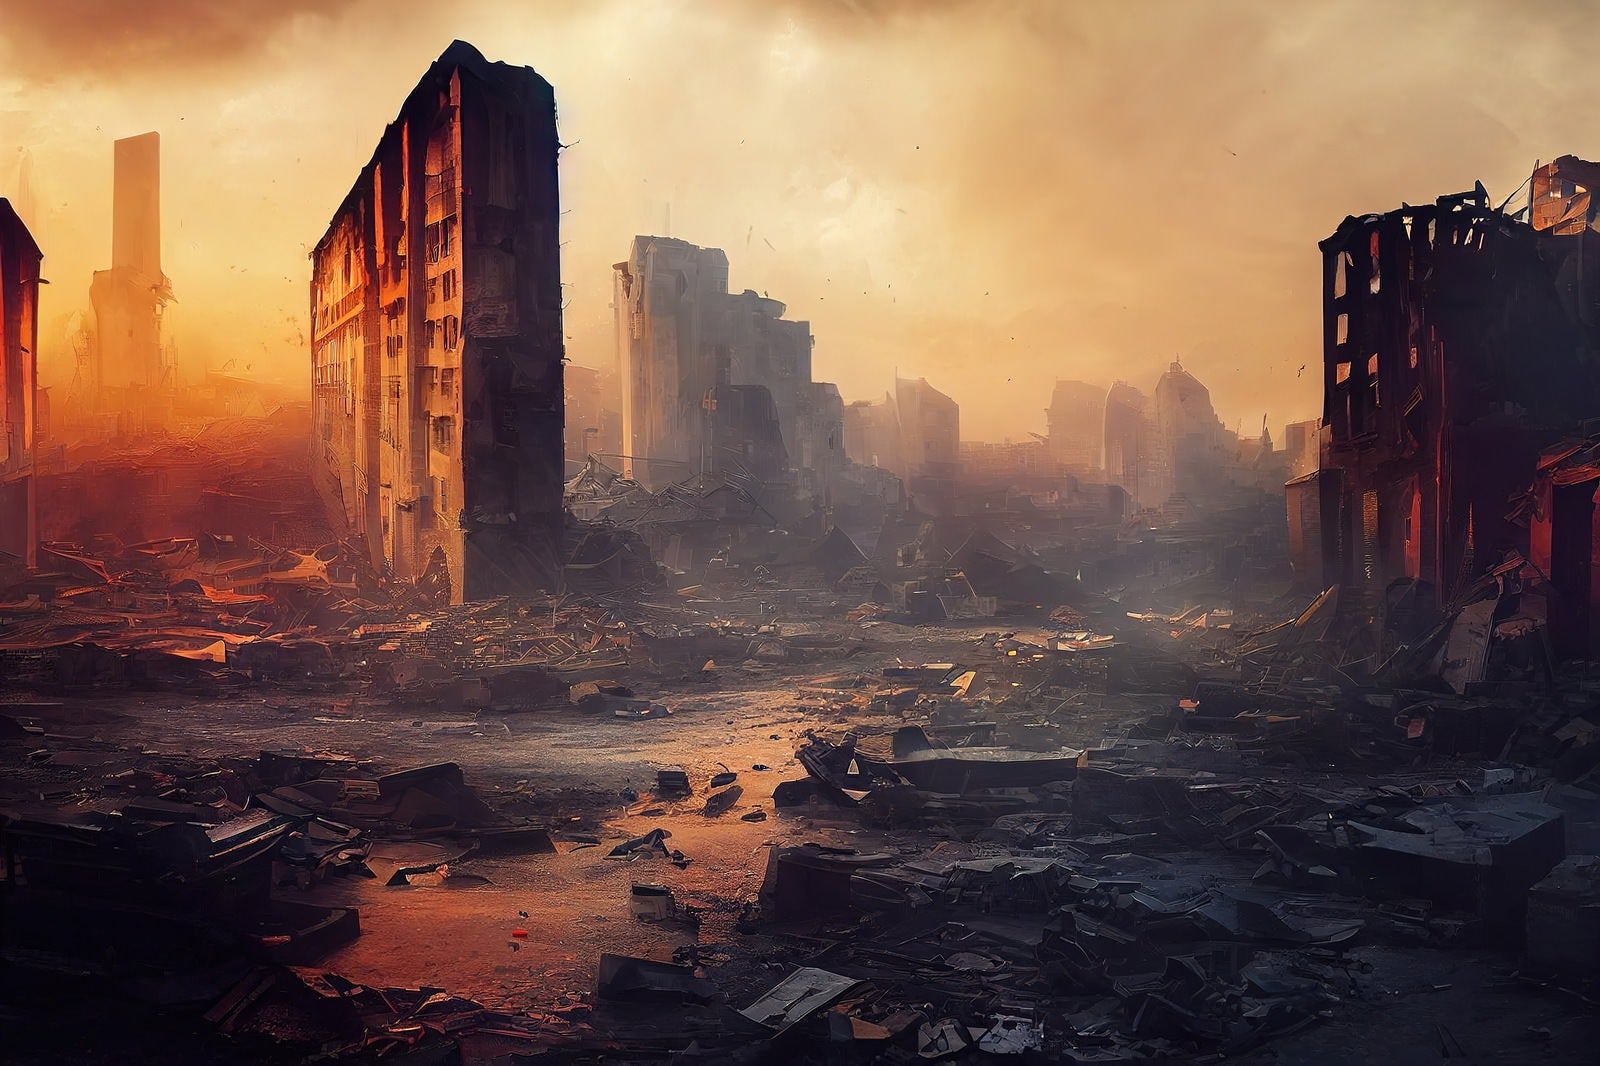 「荒廃した瓦礫の市街地」の写真